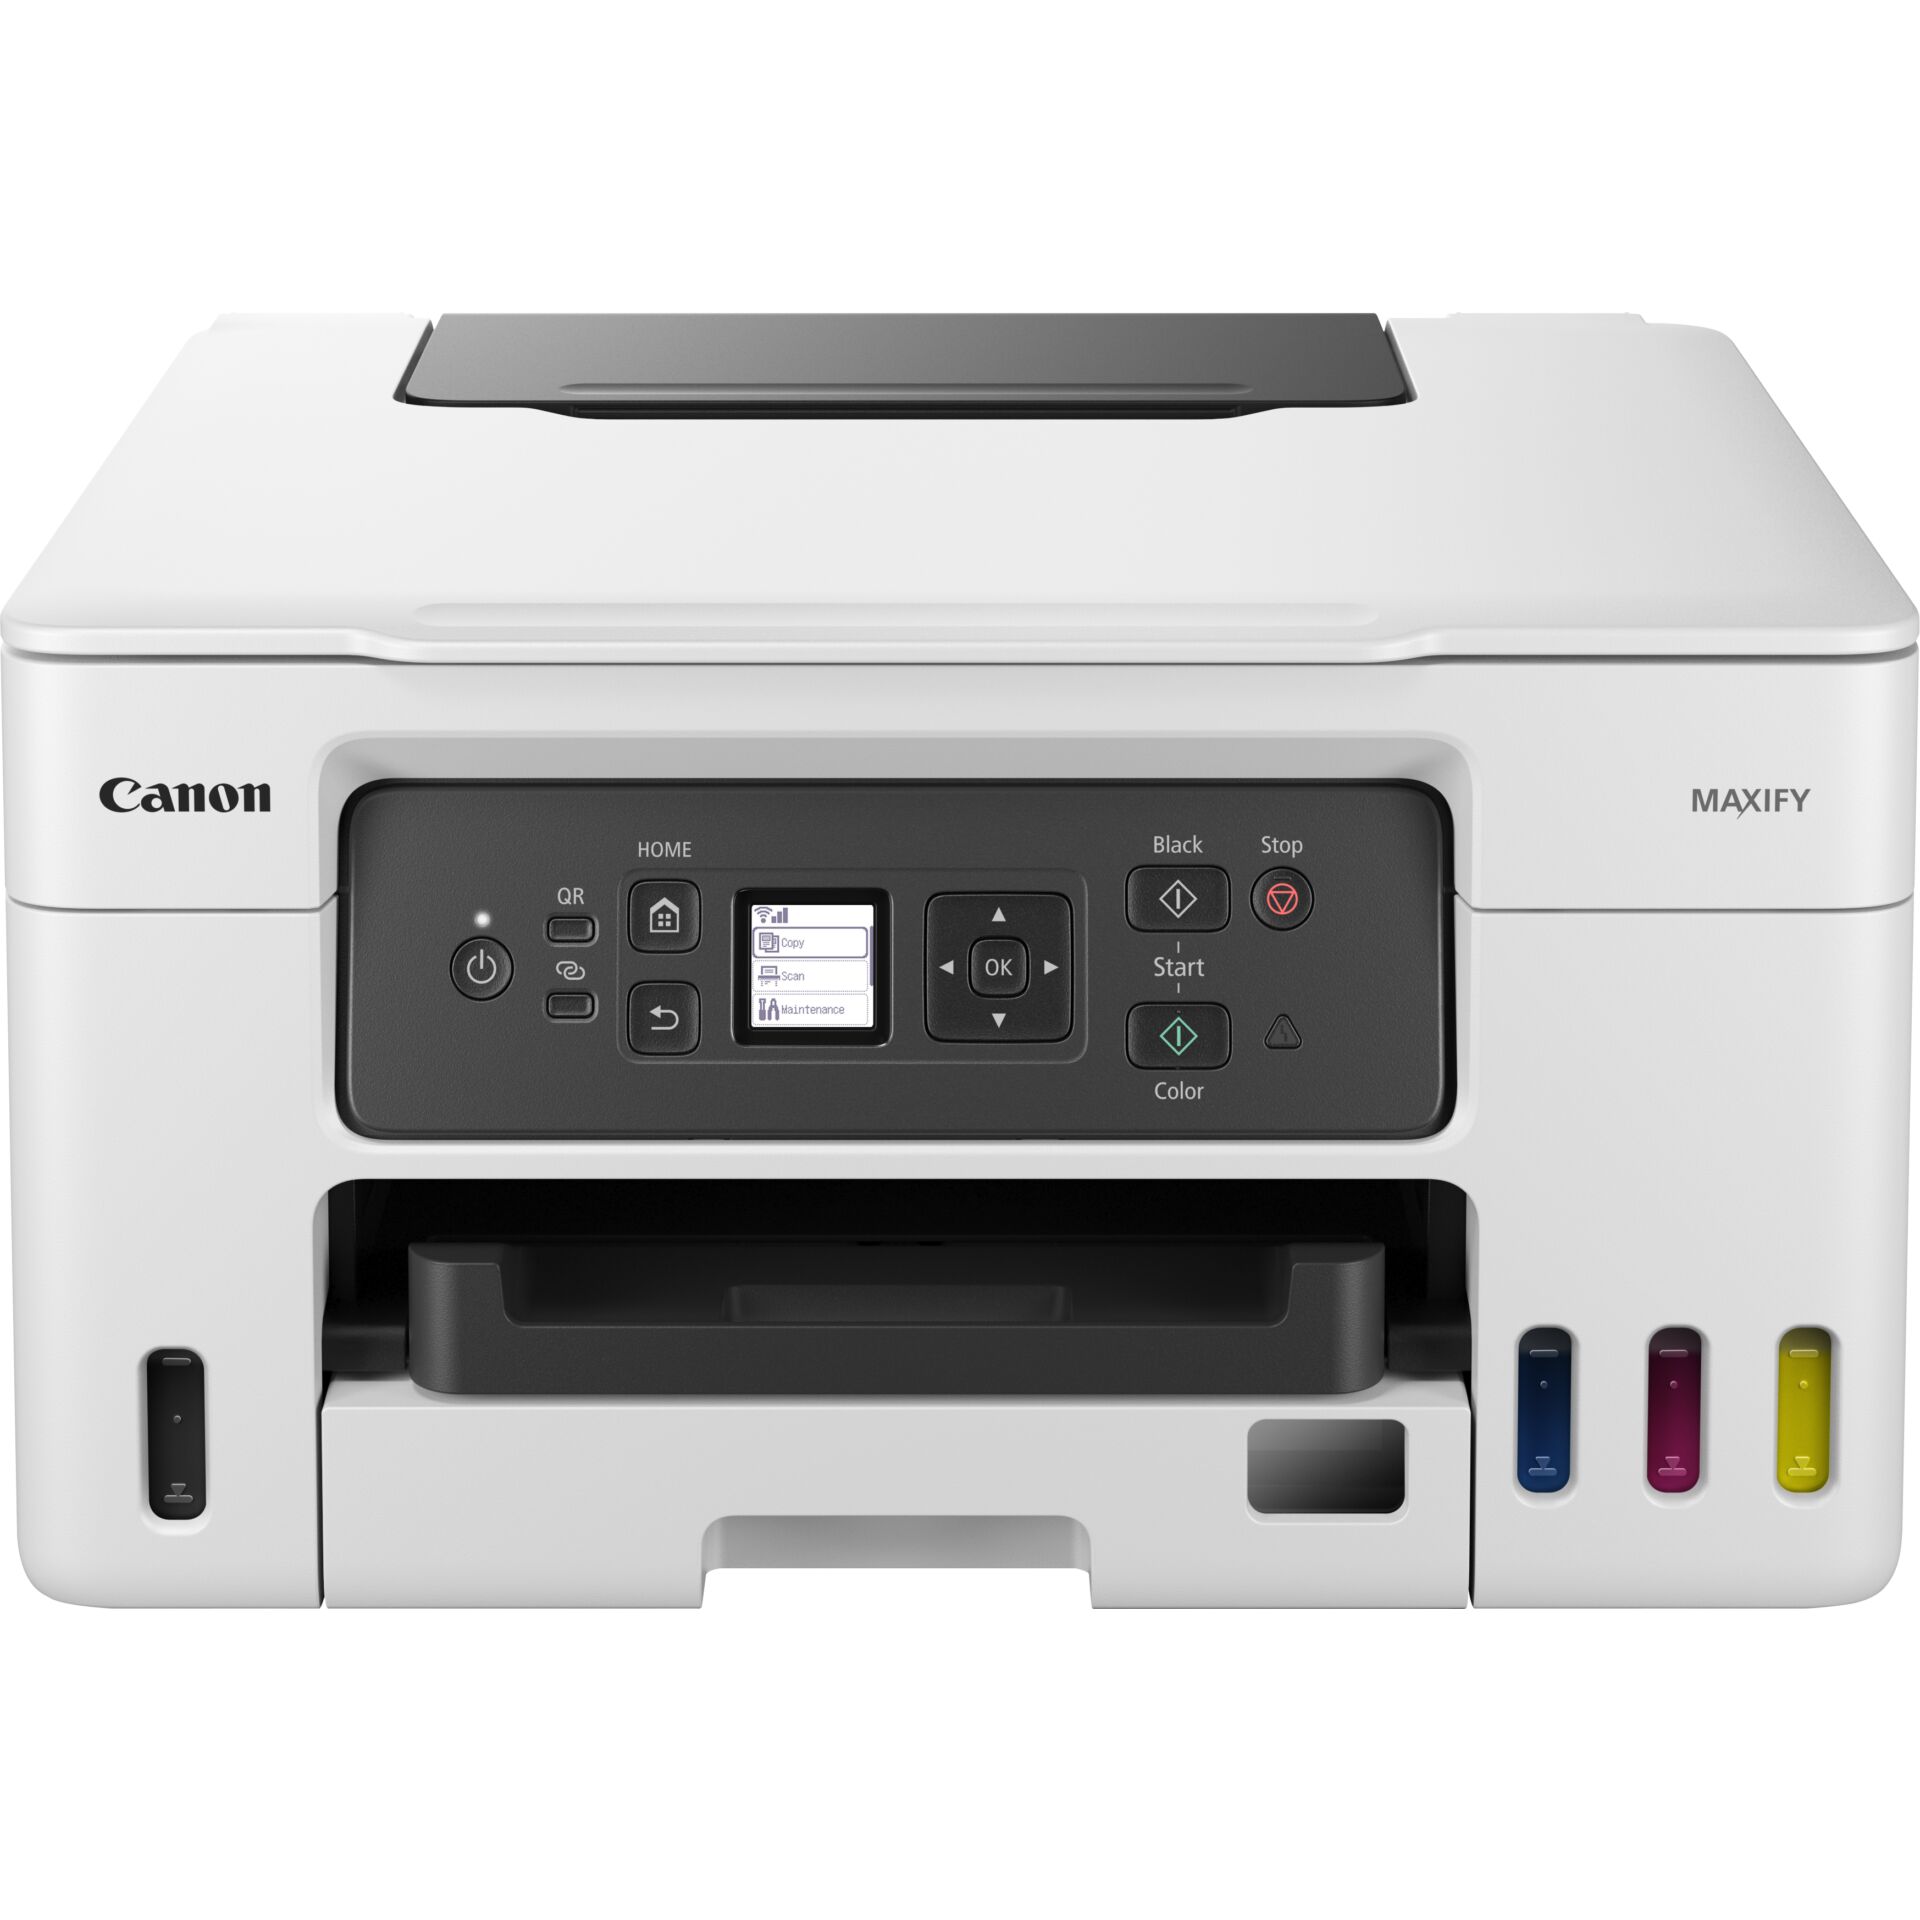 Canon MAXIFY GX3050, Tinte, mehrfarbig-Multifunktionsgerät, Drucker/Scanner/Kopierer